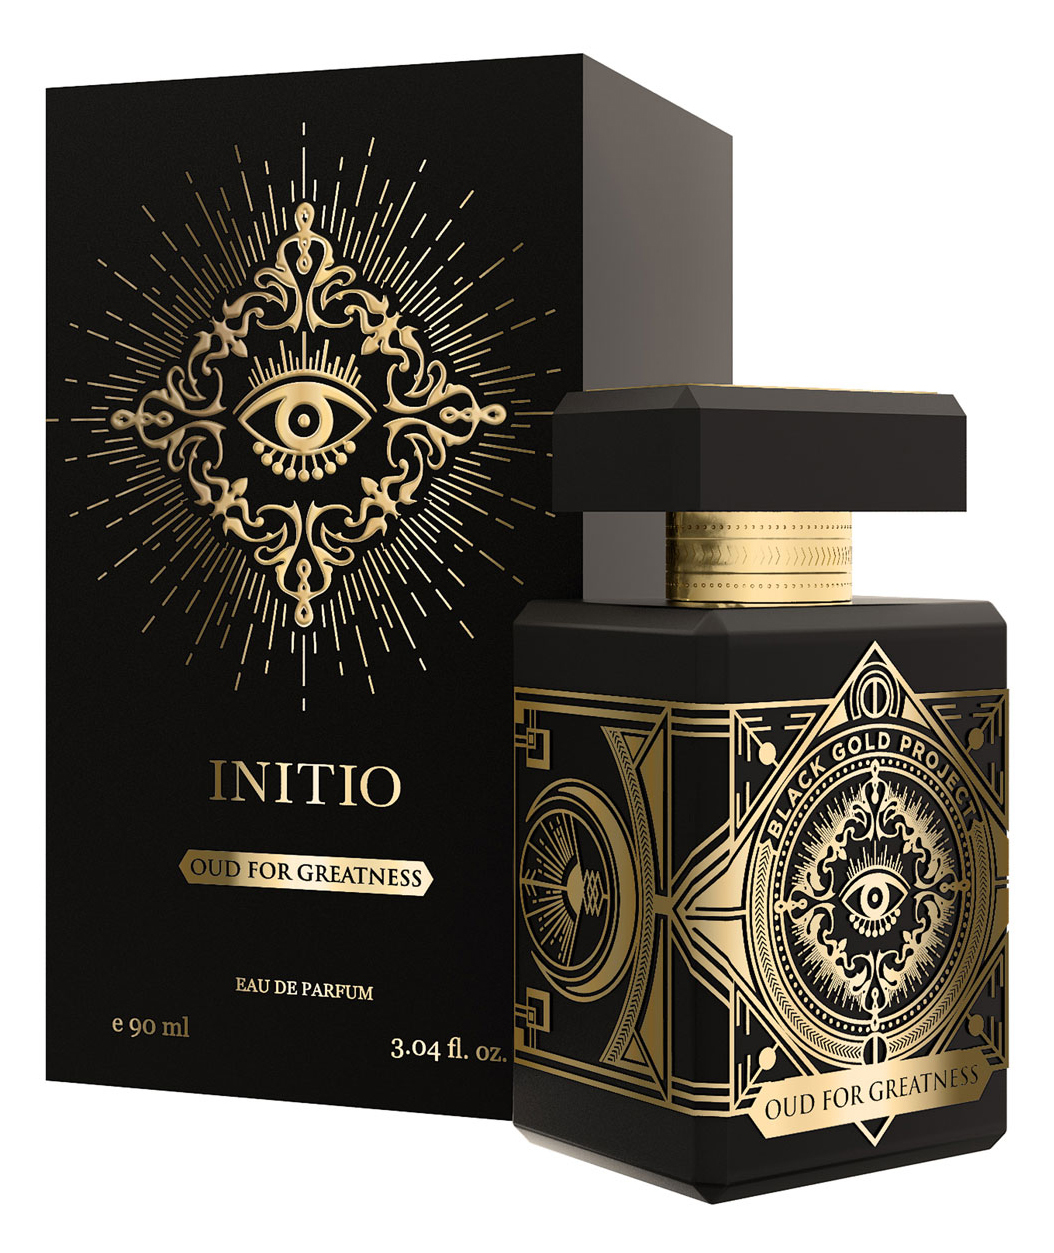 Initio - Oud for Greatness - Black Gold Project - Eau de Parfum 90 ml